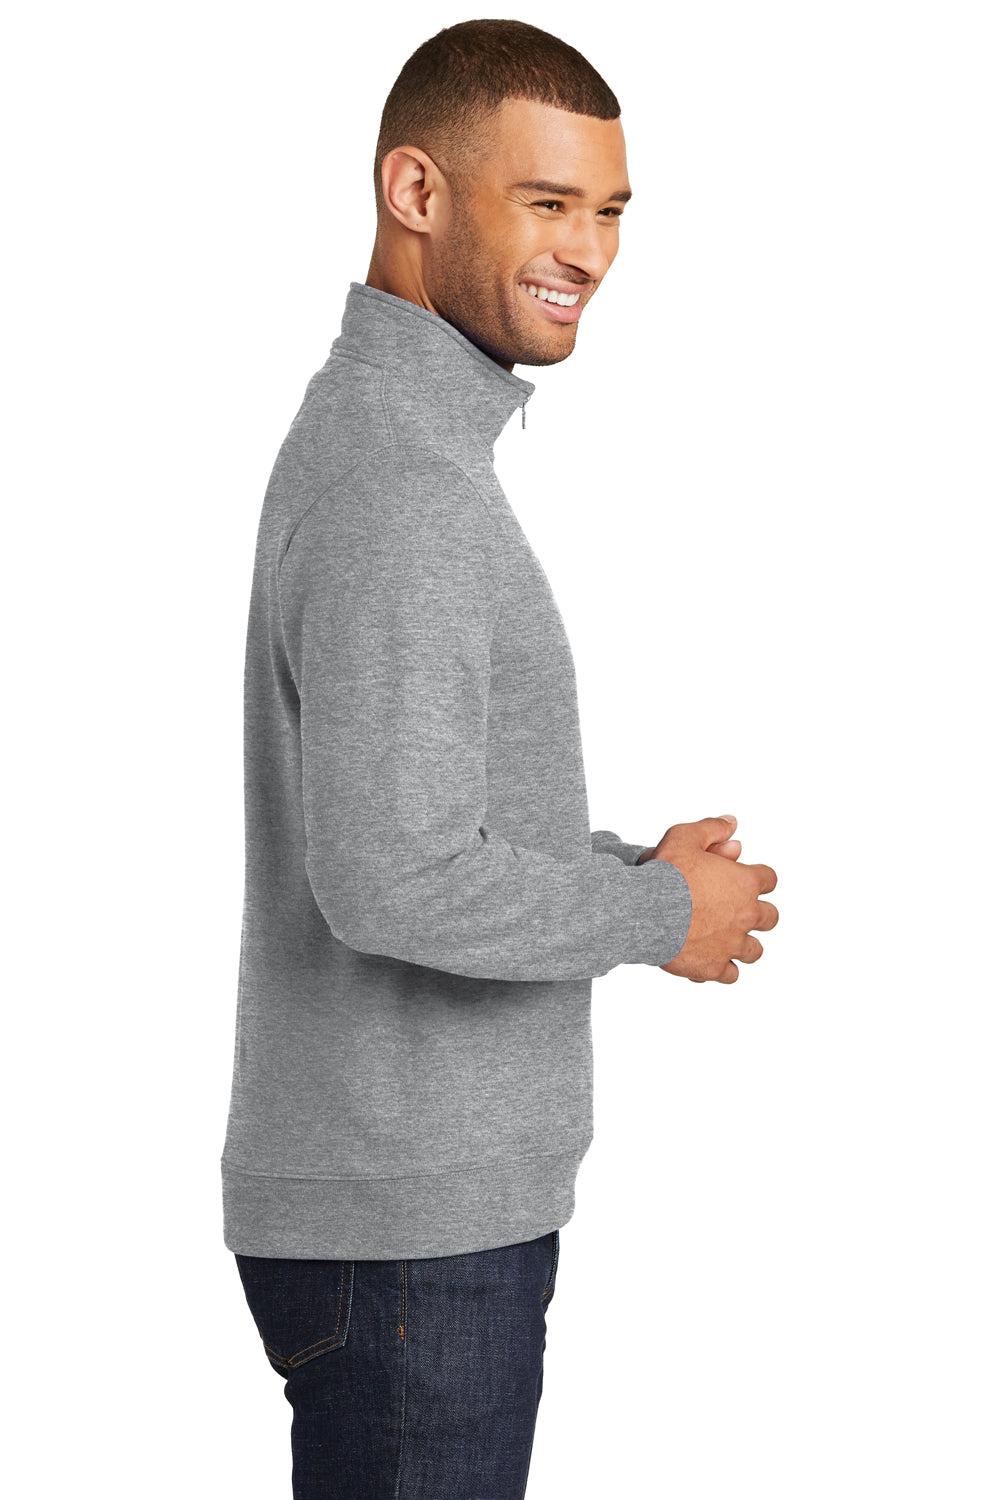 Port & Company PC850Q Mens Fan Favorite Fleece 1/4 Zip Sweatshirt Heather Grey Side